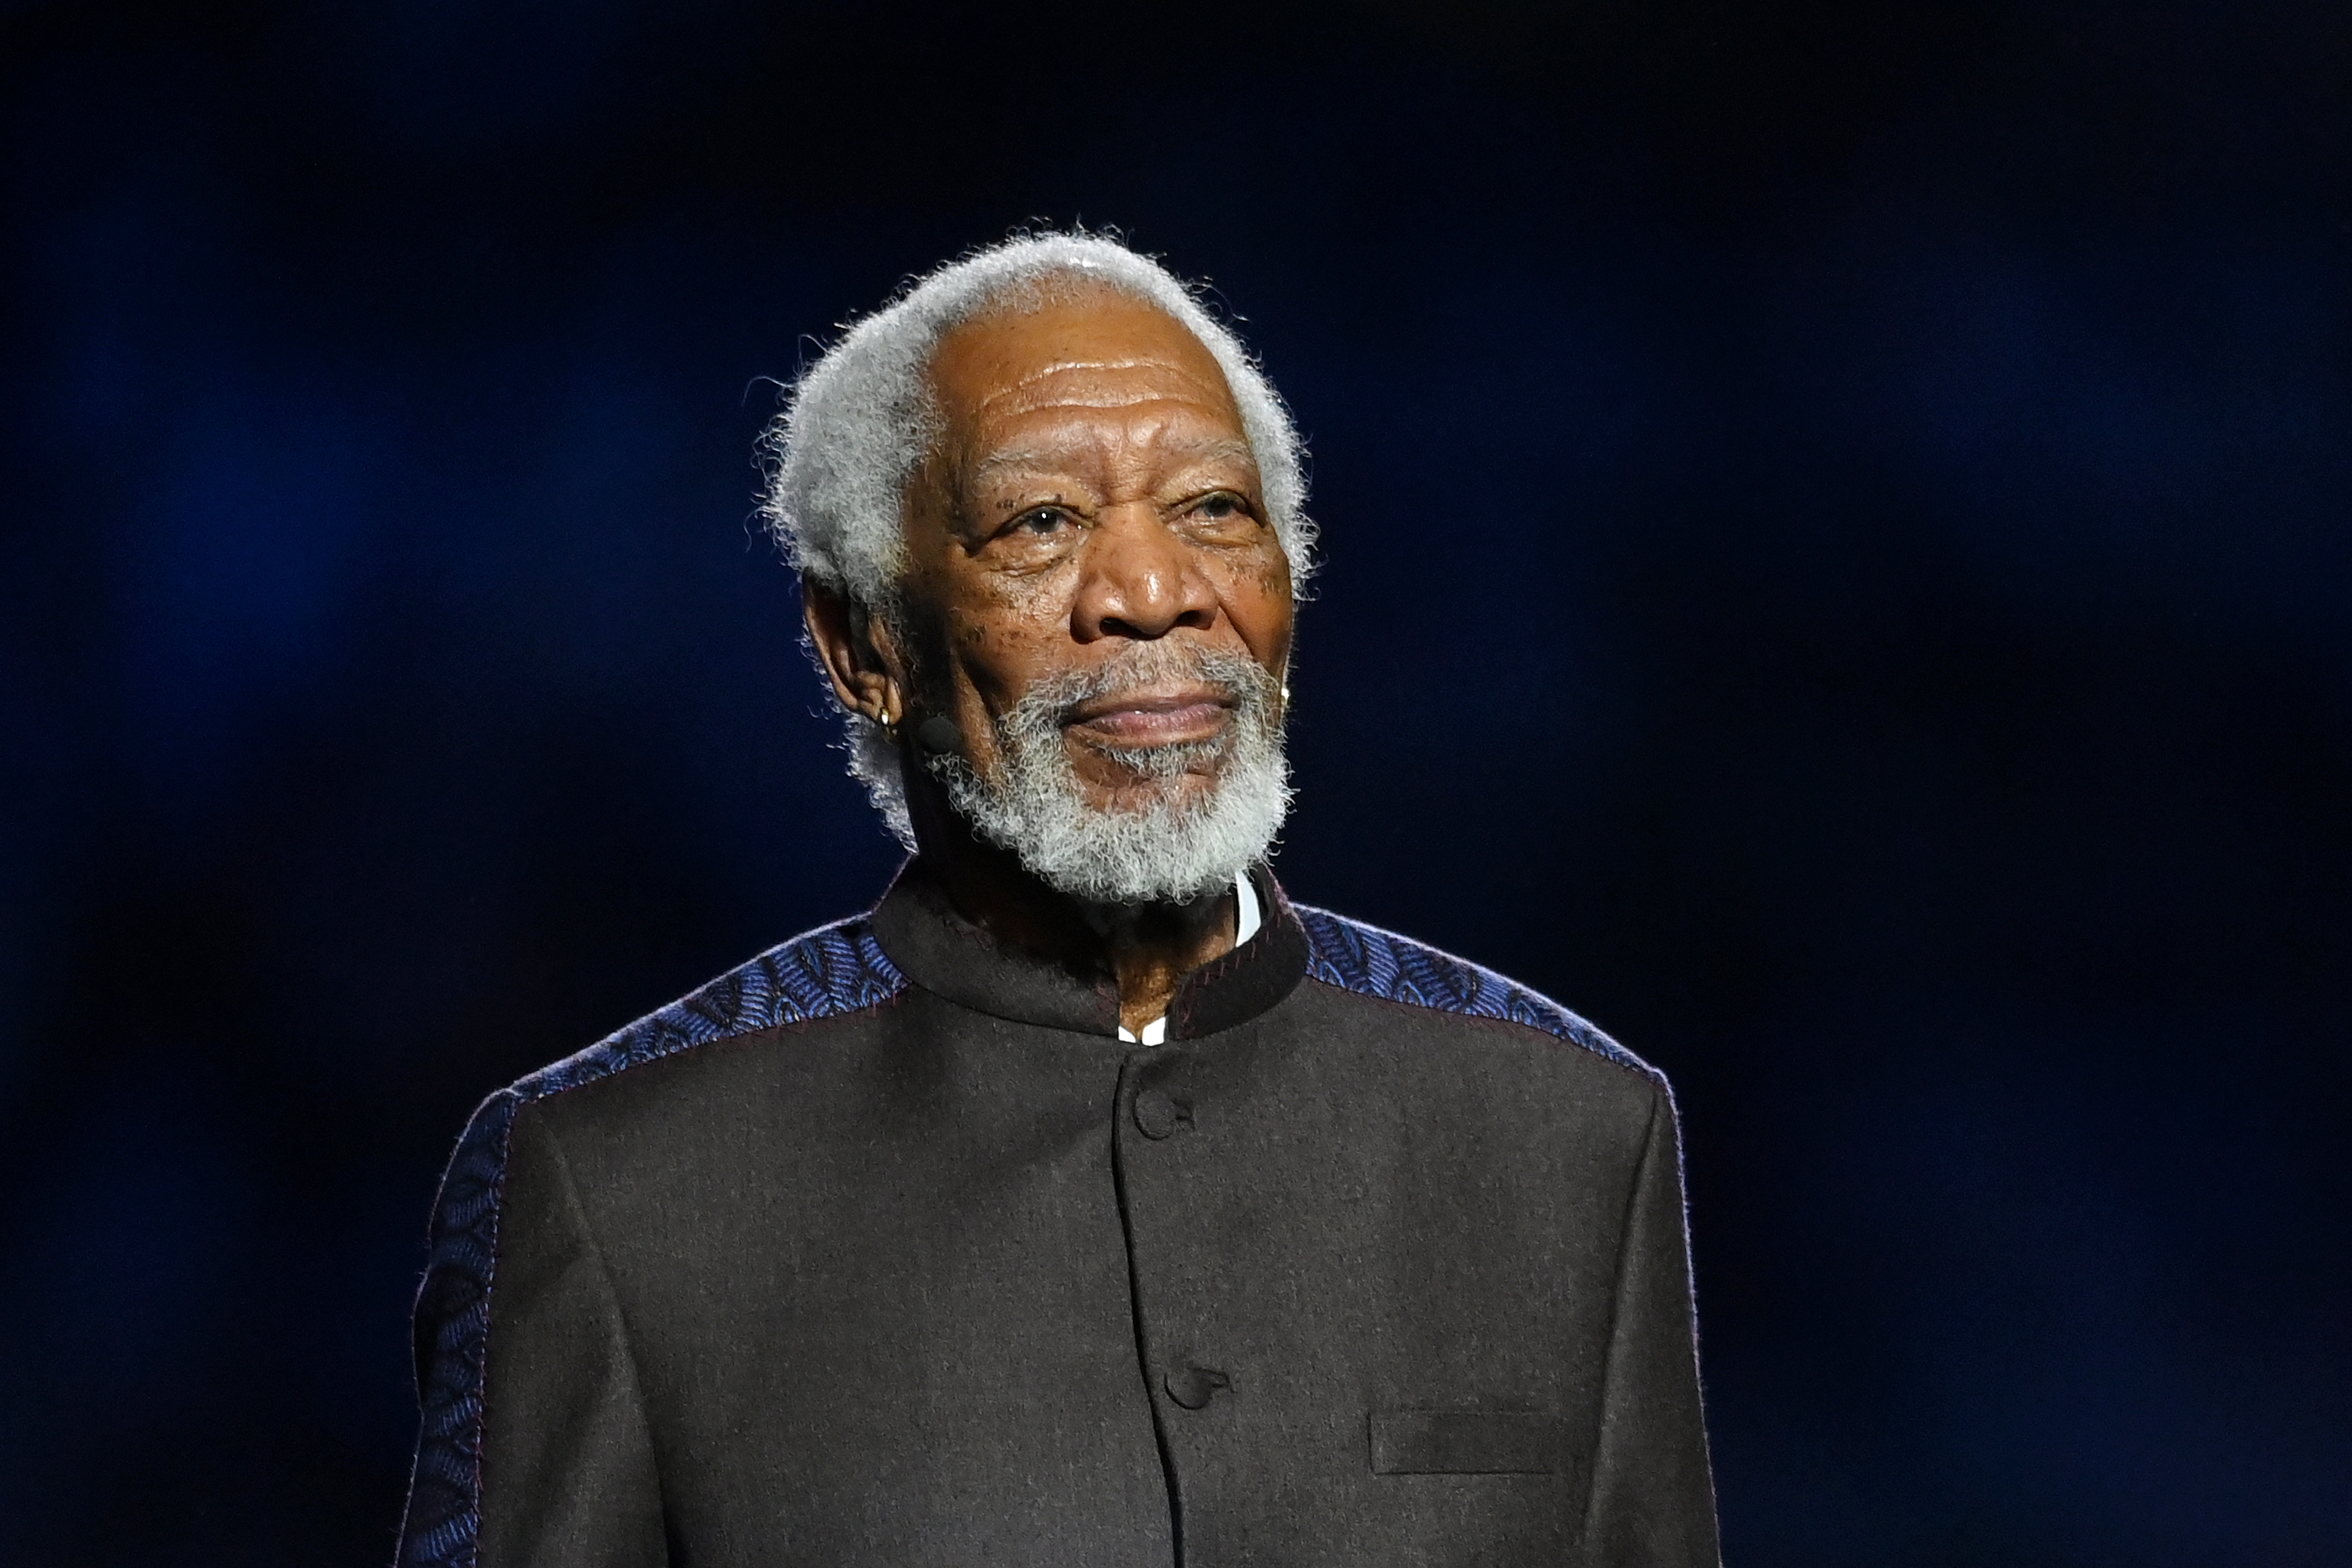 Morgan Freeman se presenta en la ceremonia de inauguración de la Copa Mundial de la FIFA Qatar 2022. | Foto: Getty Images